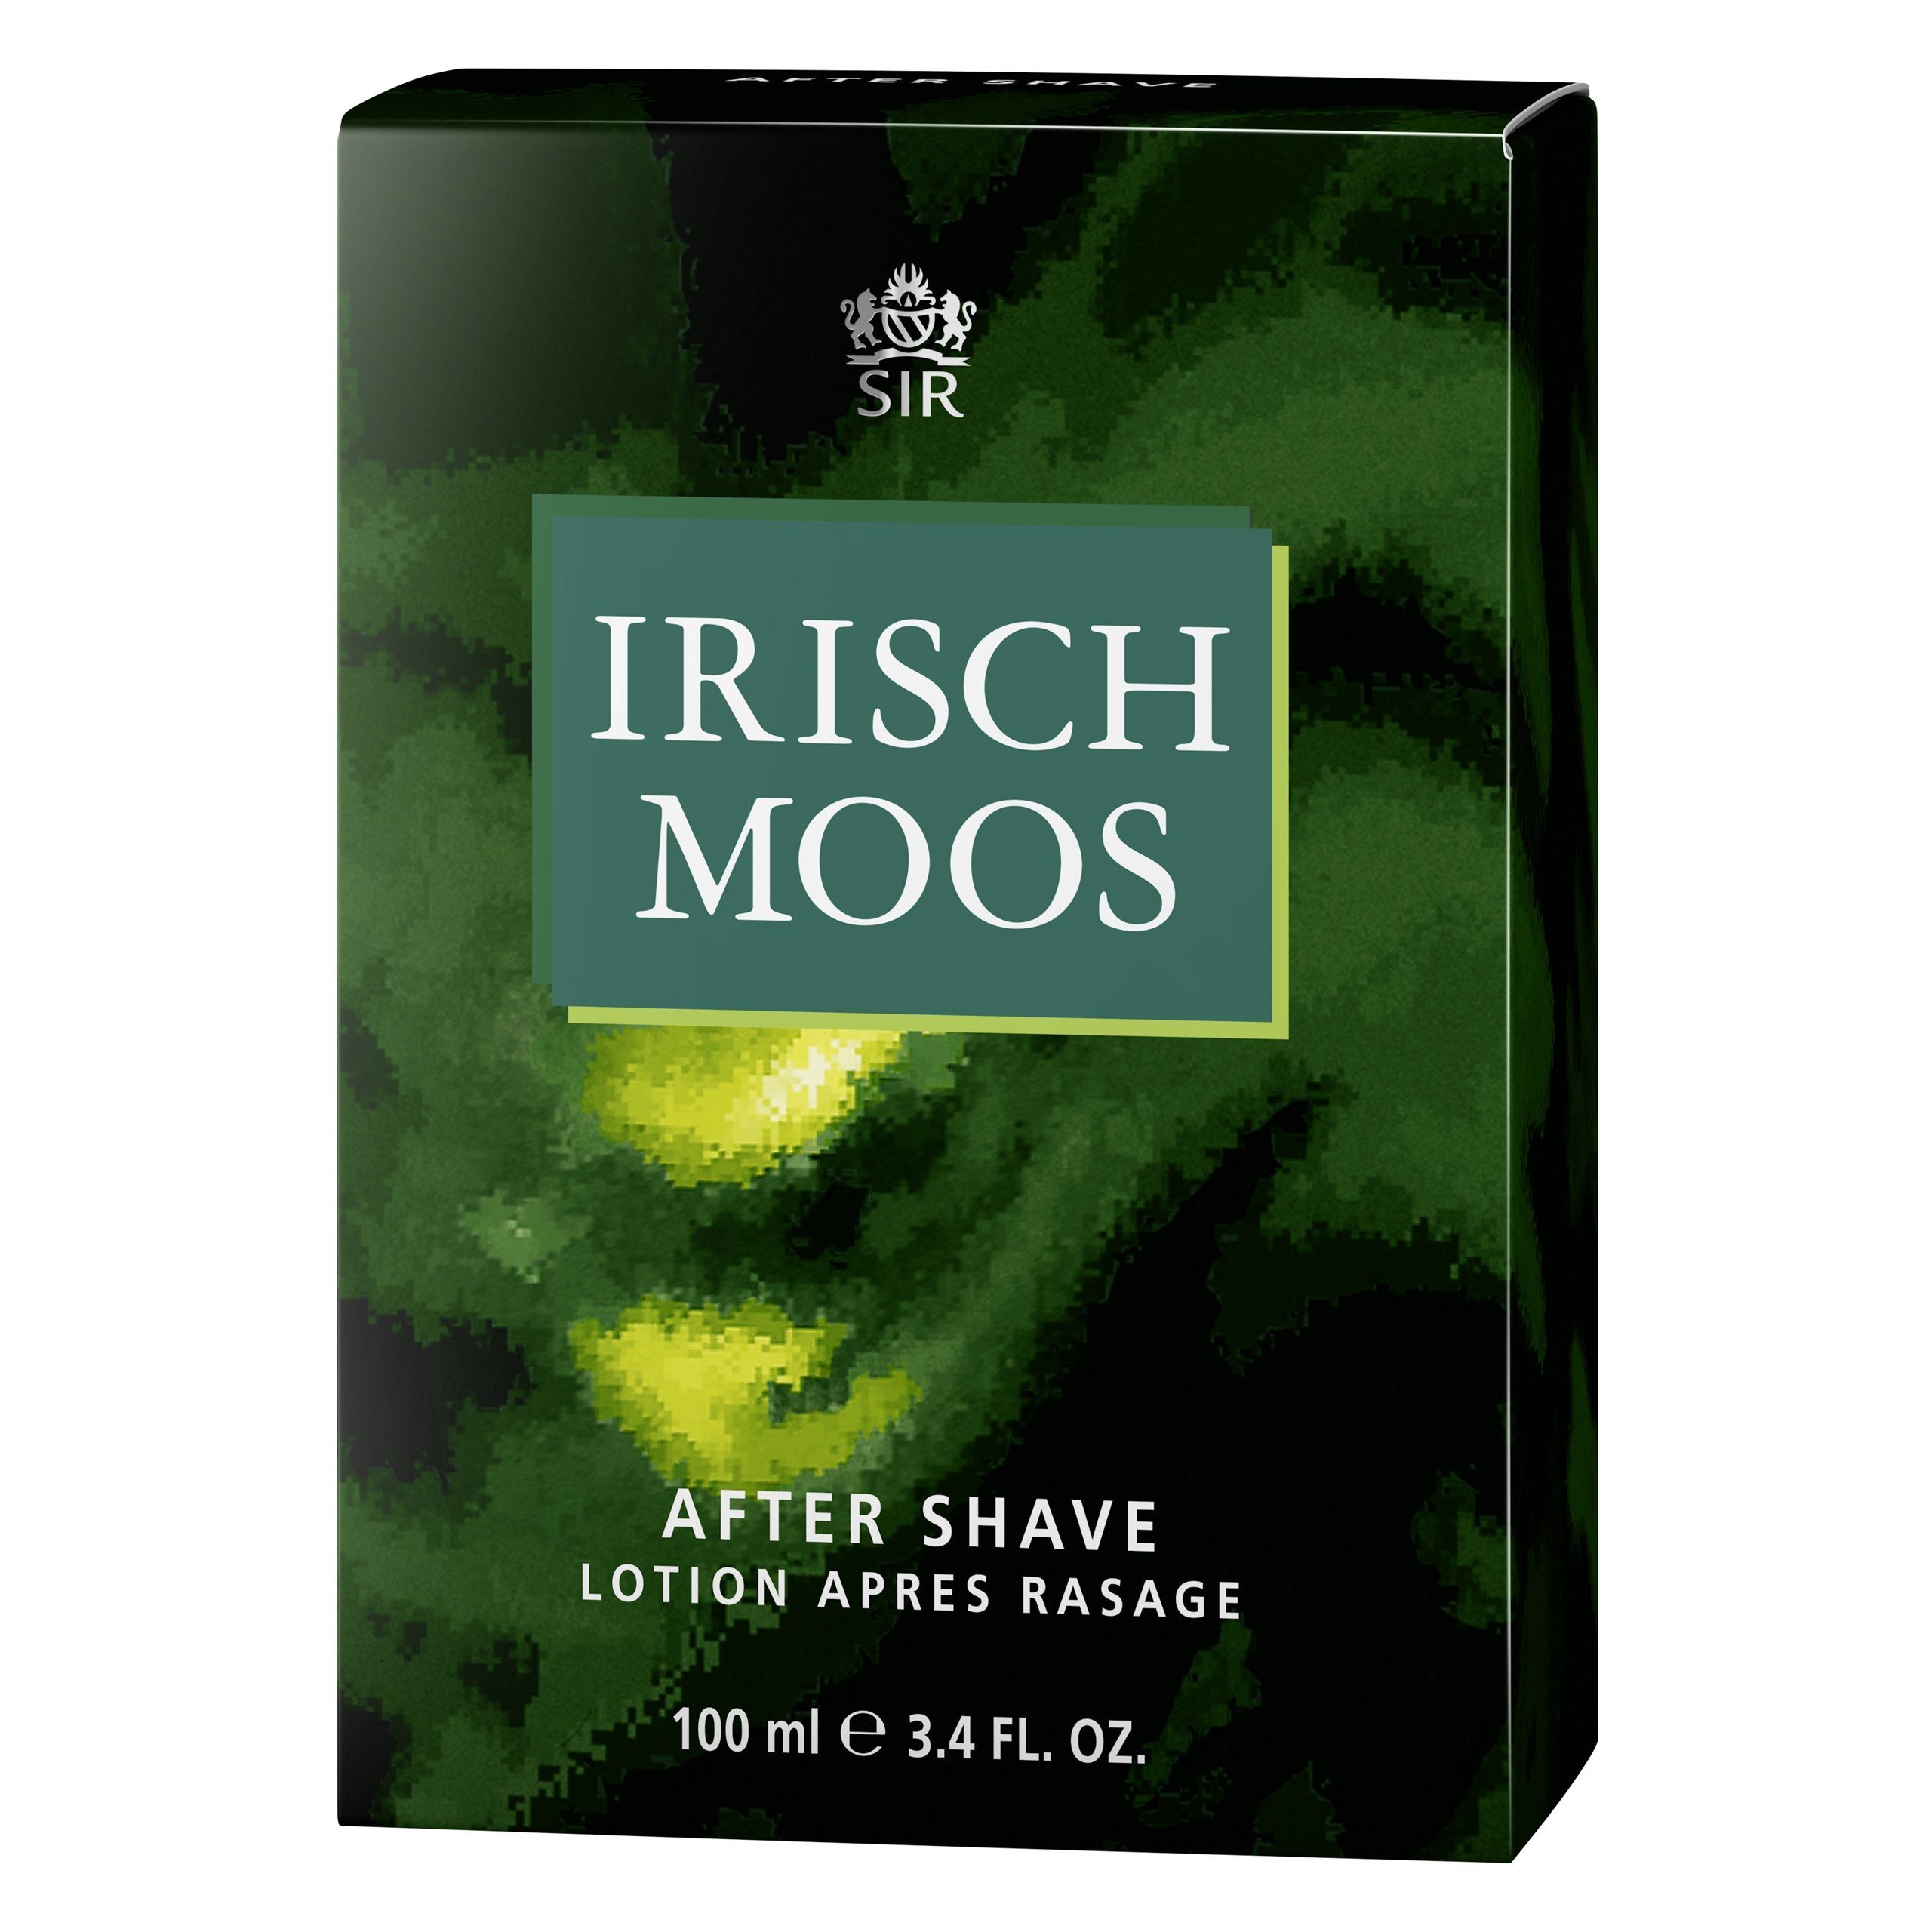 Sir Irisch Moos Gesichts-Reinigungslotion Lotion IRISCH After Shave MOOS ml SIR 100